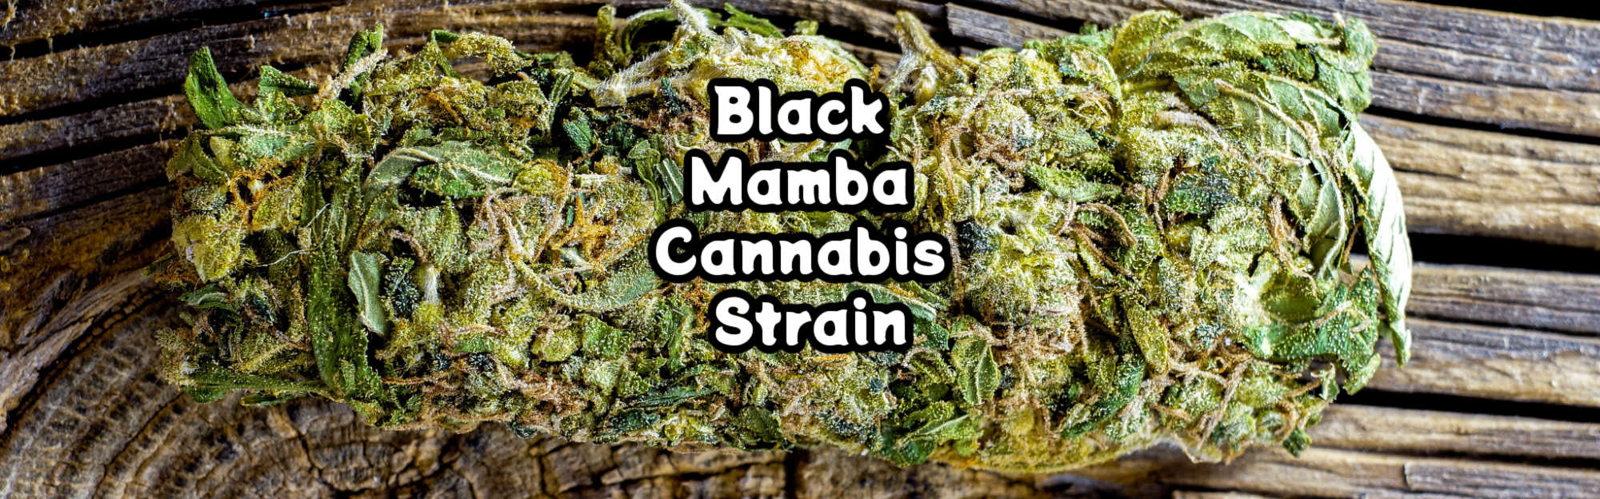 image of black mamba strain